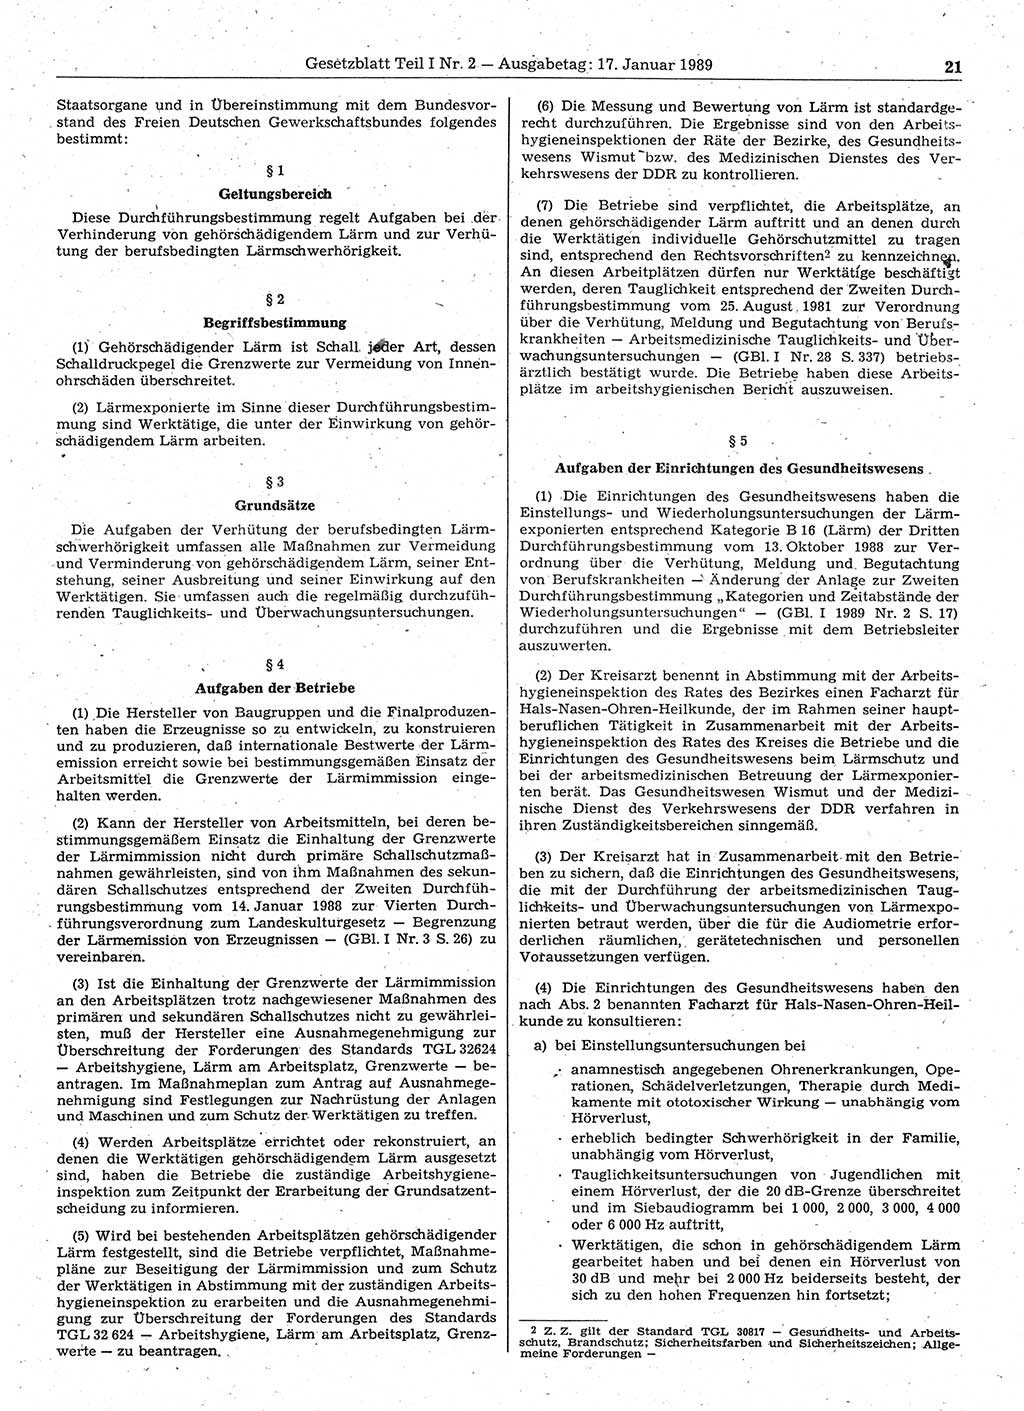 Gesetzblatt (GBl.) der Deutschen Demokratischen Republik (DDR) Teil Ⅰ 1989, Seite 21 (GBl. DDR Ⅰ 1989, S. 21)